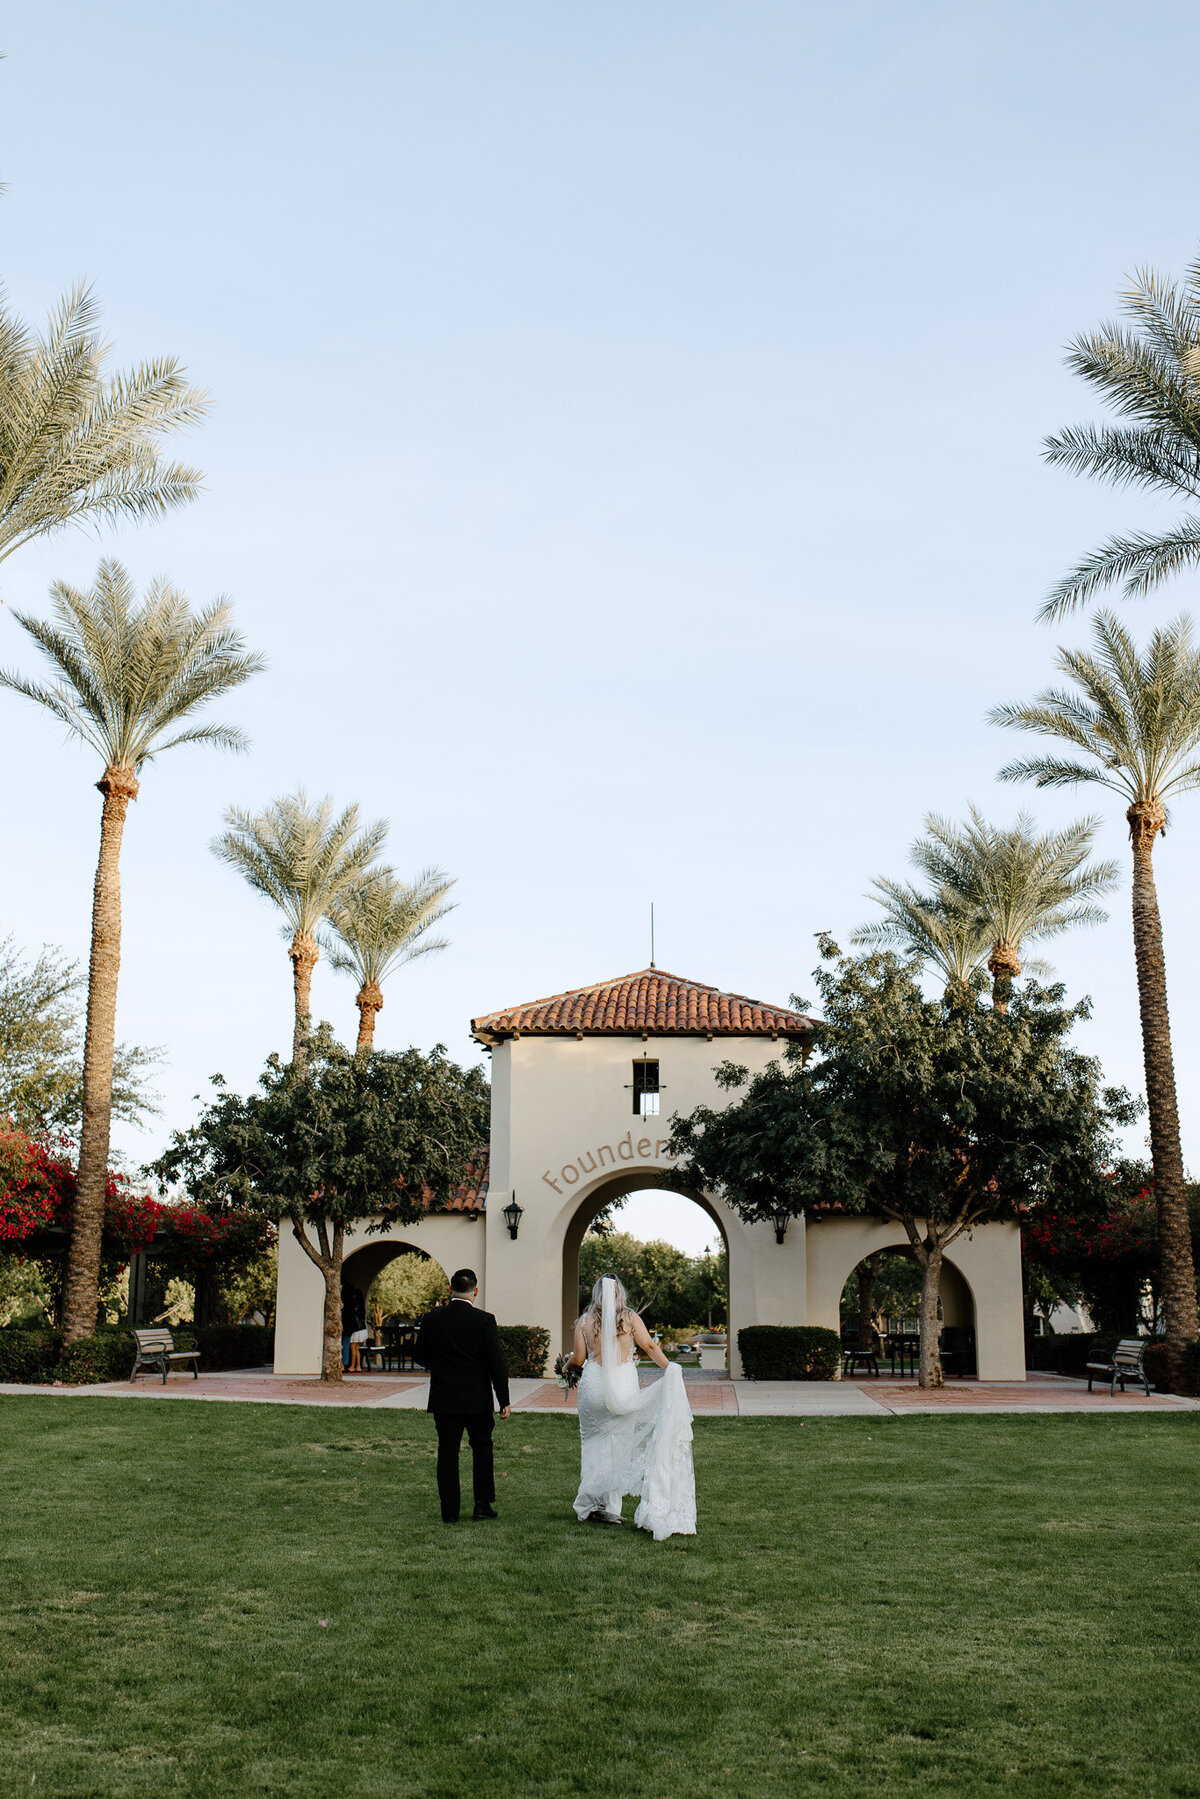 Arizona Wedding and Elopement Photographer - Candid Moments and Details - Buckeye, Arizona